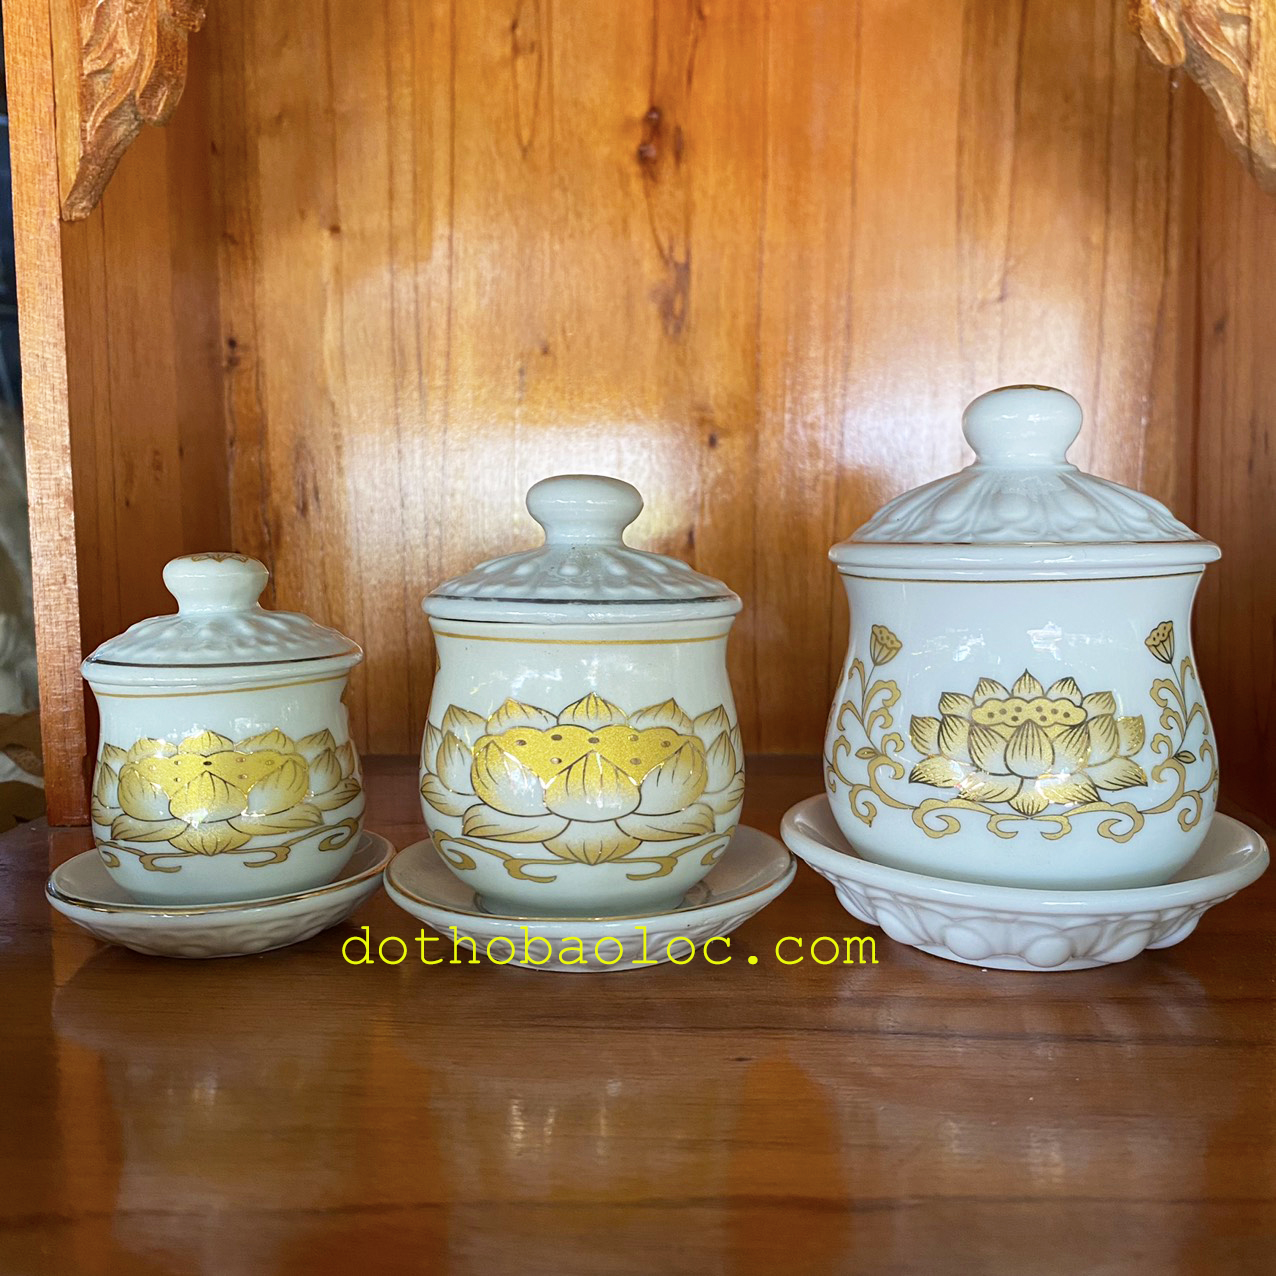 Hũ đựng gạo muối thờ cúng bằng sứ hình hoa sen vàng 3D 3 cỡ cao: 7cm, 9cm, 11cm